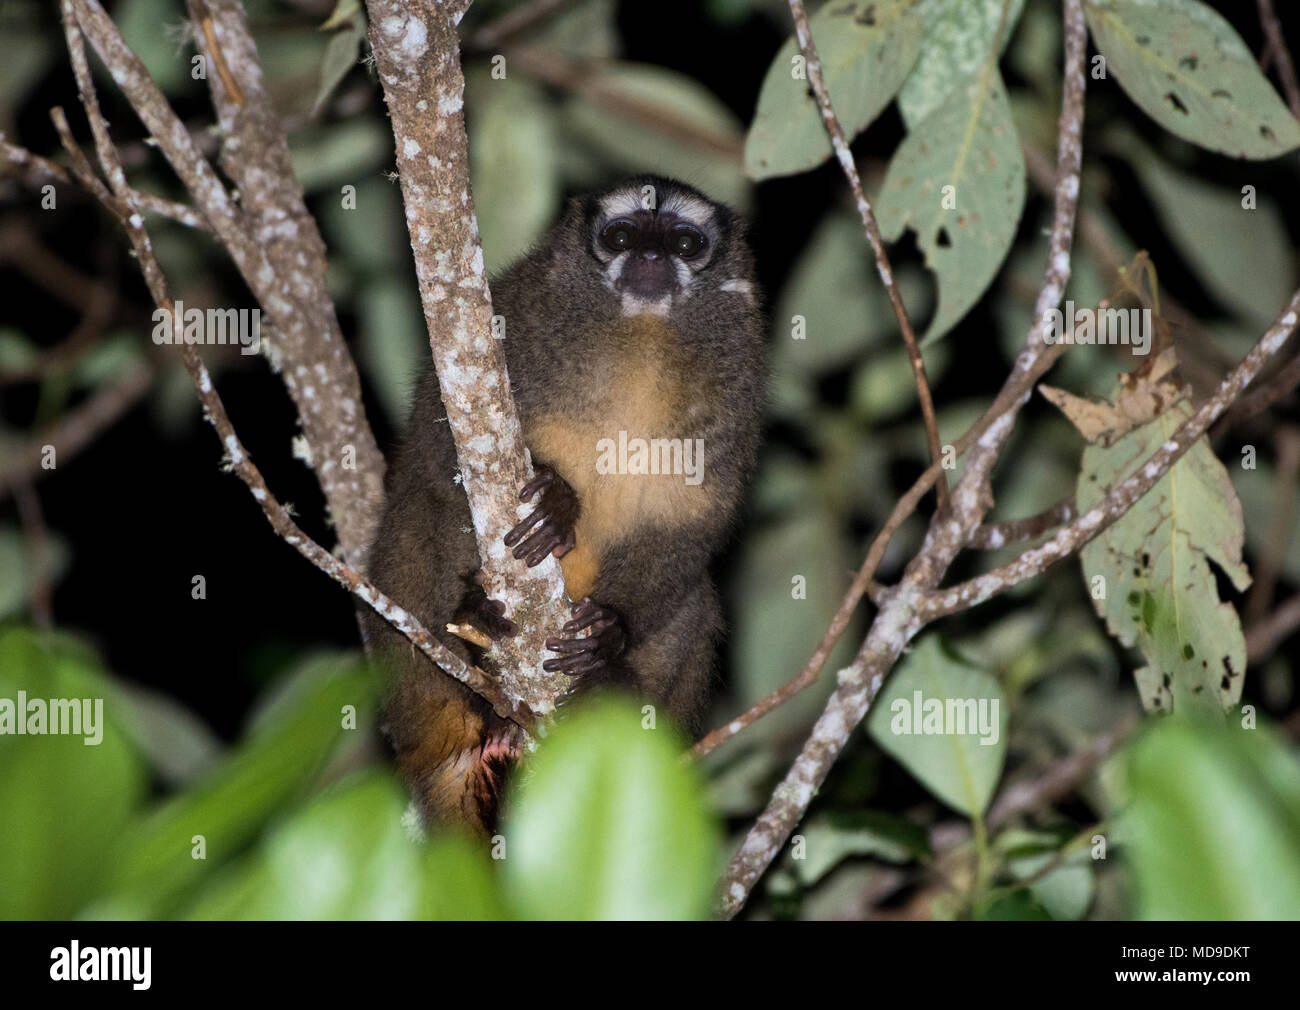 Nuit Monkey (Aotus griseimembra), un primate nocturne, de recherche de nourriture sur un arbre. La Sierra Nevada de Santa Marta, Colombie, Amérique du Sud. Banque D'Images